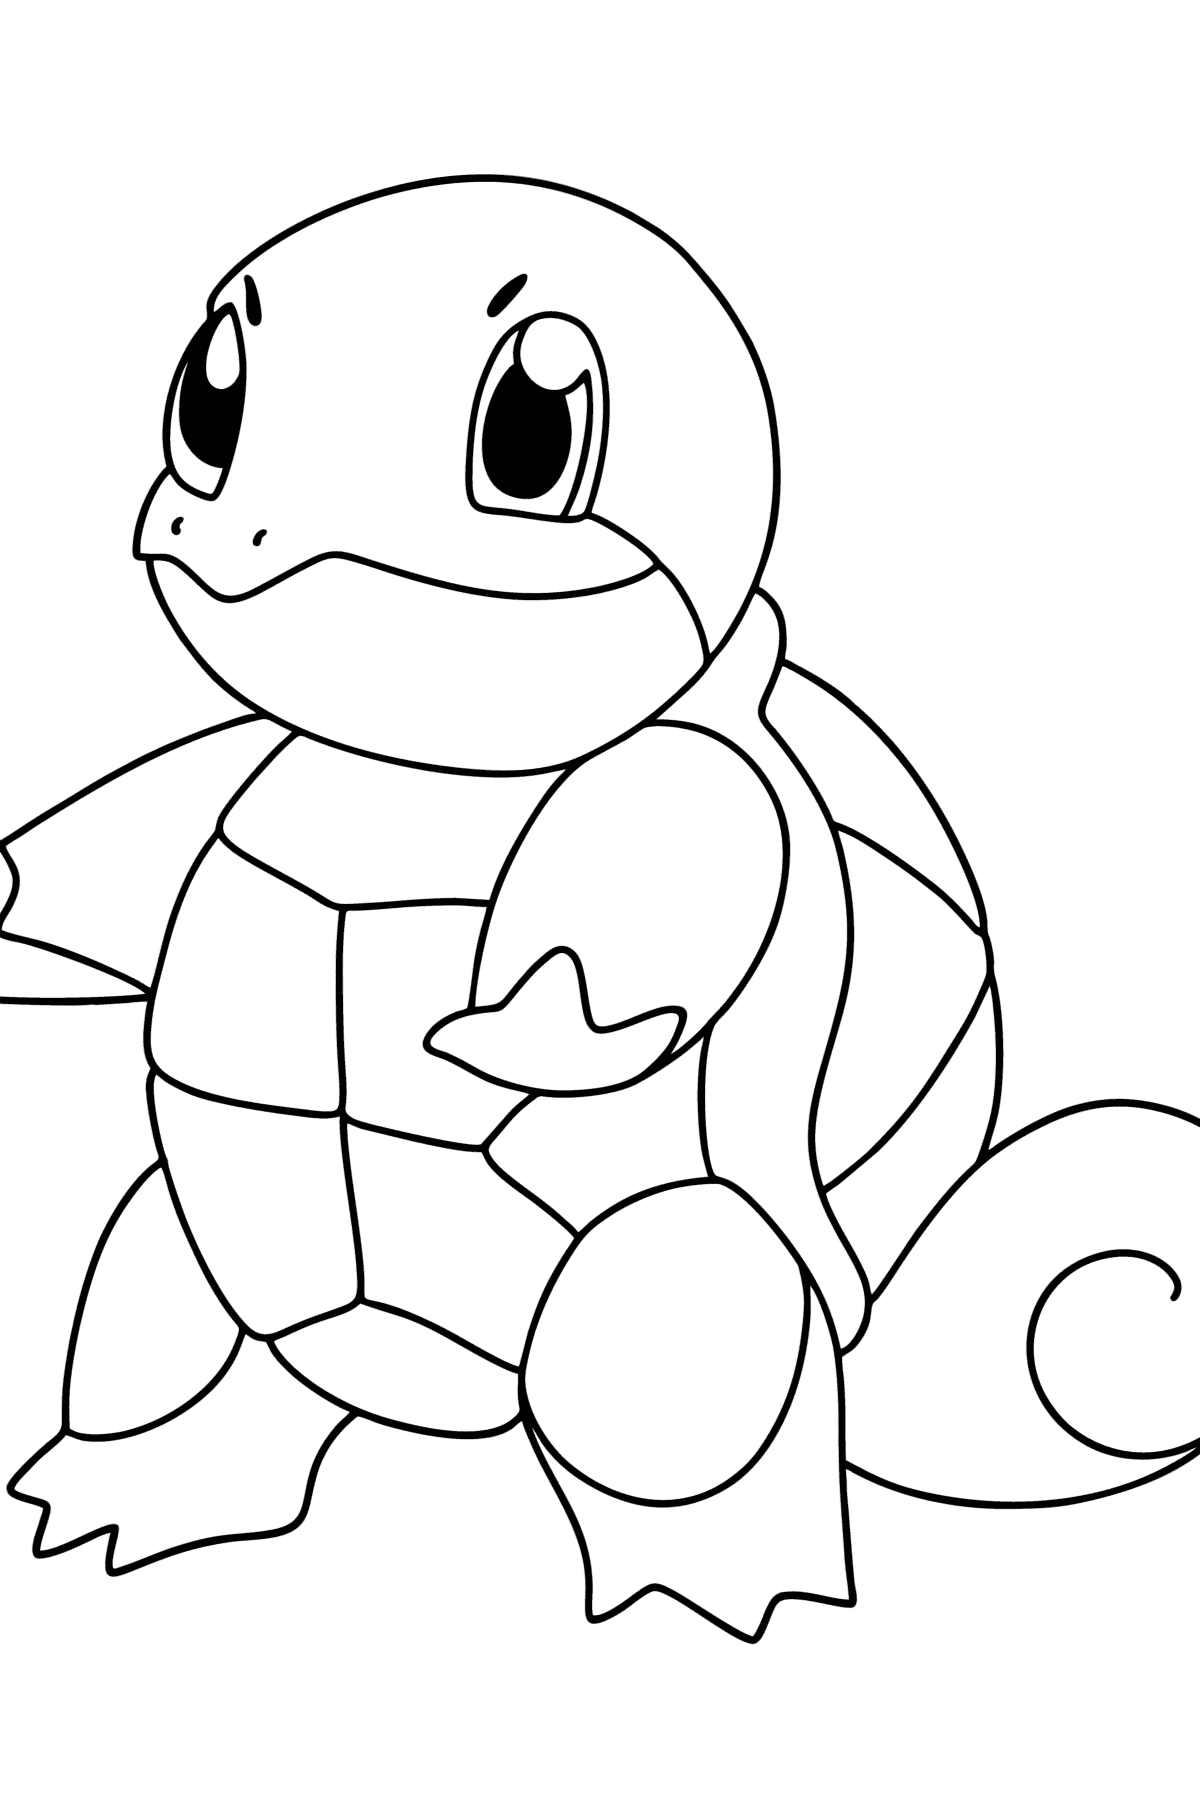 Раскраска Покемон (Pokemon Go) Squirtle - Картинки для Детей